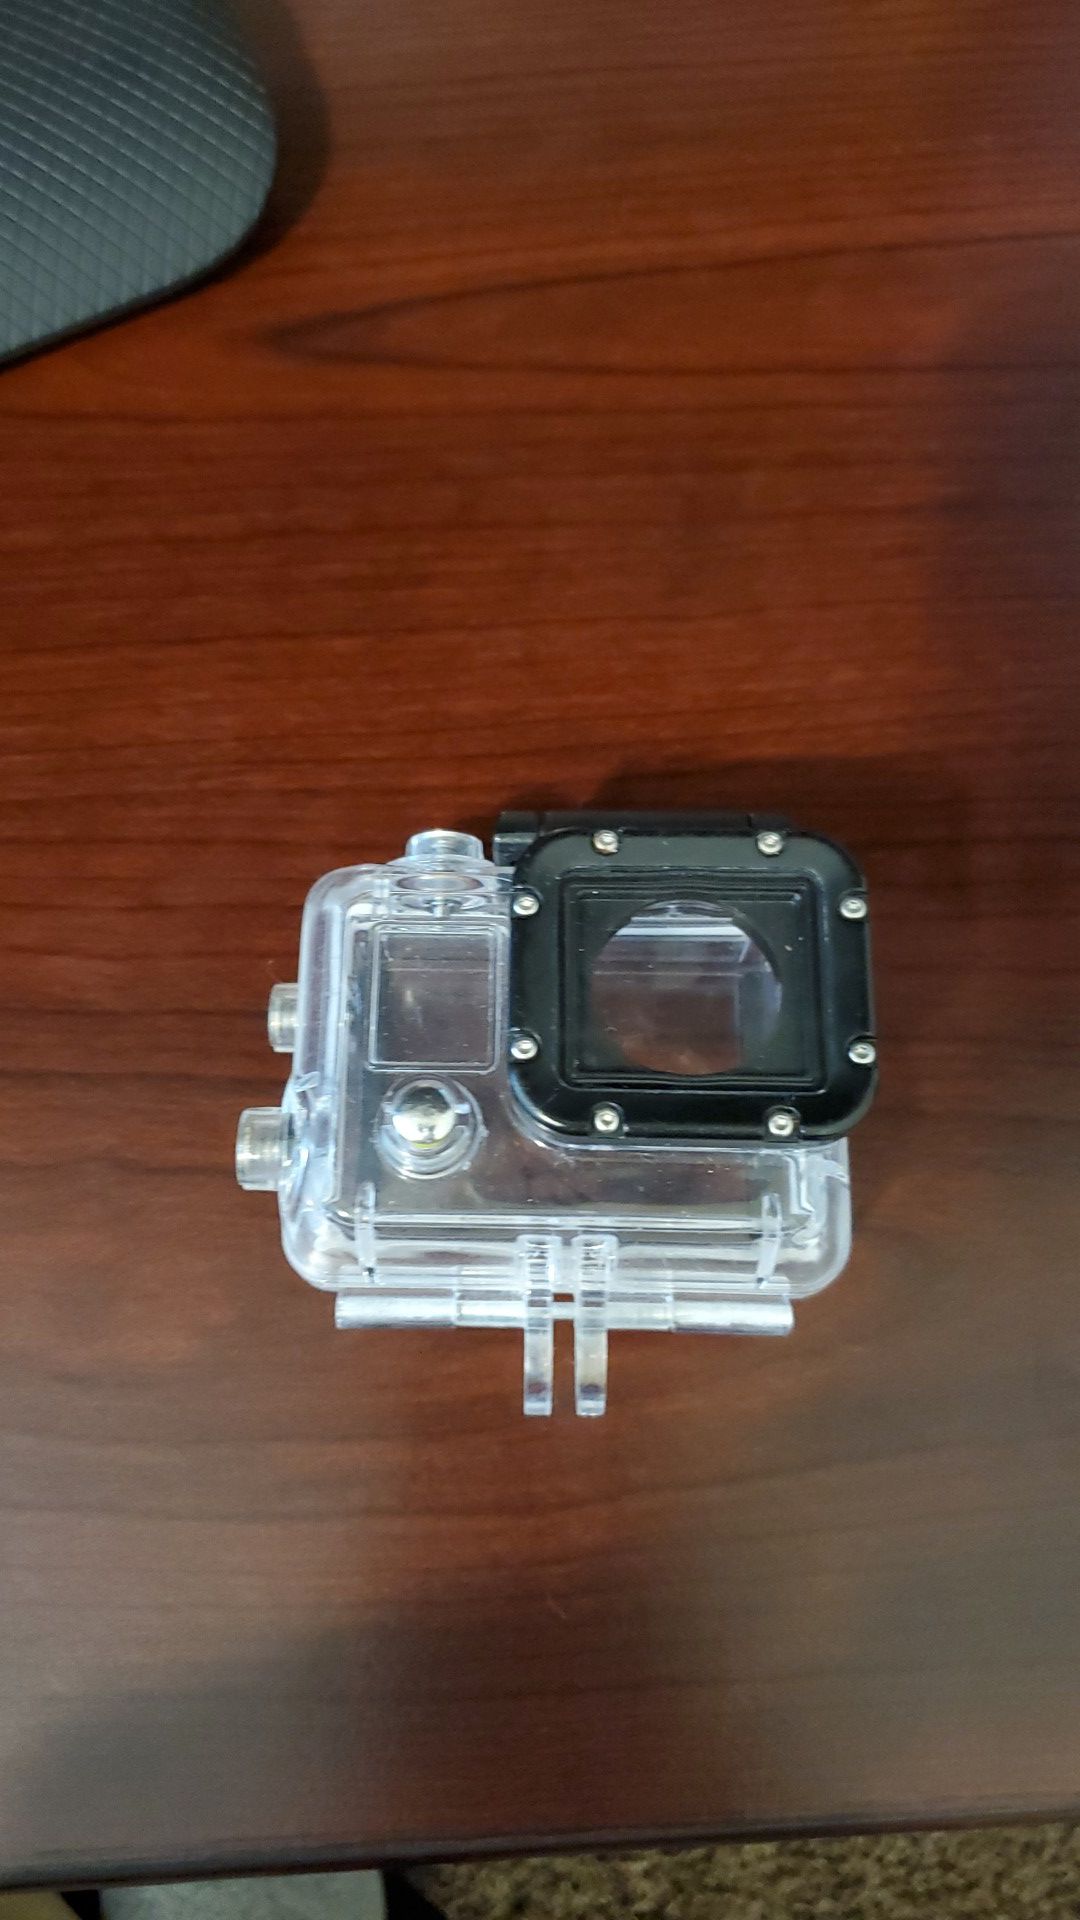 GoPro Hero 3 waterproof casing